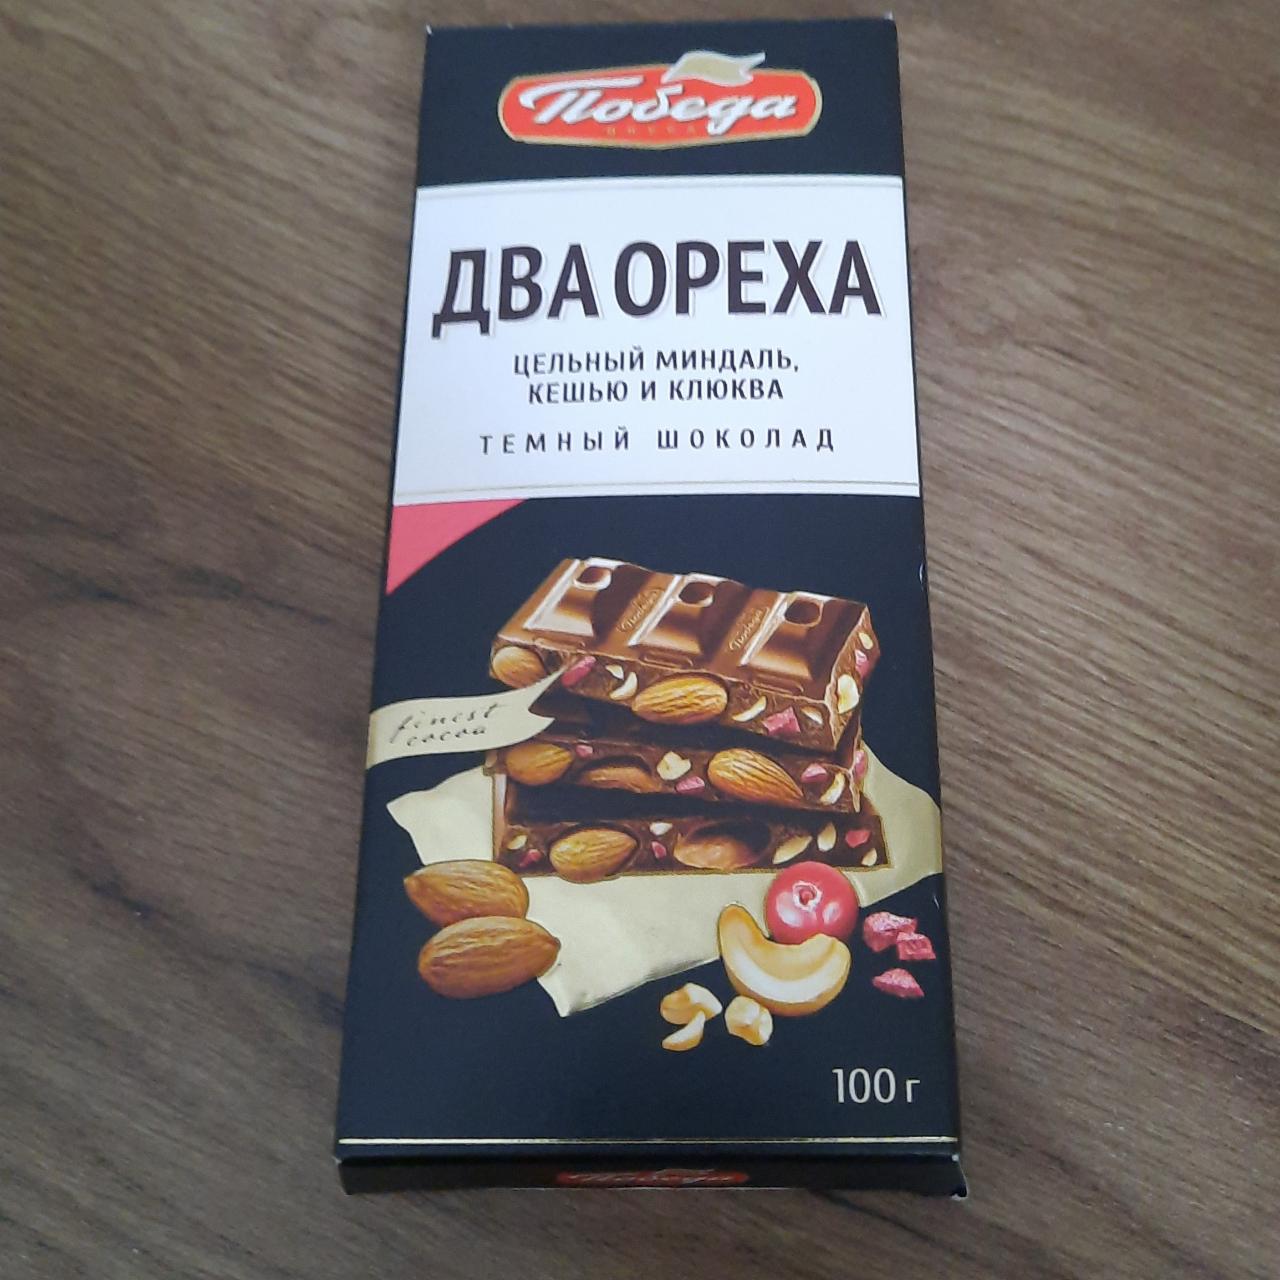 Фото - темный шоколад с миндалем, кешью и клюквой Два ореха Победа